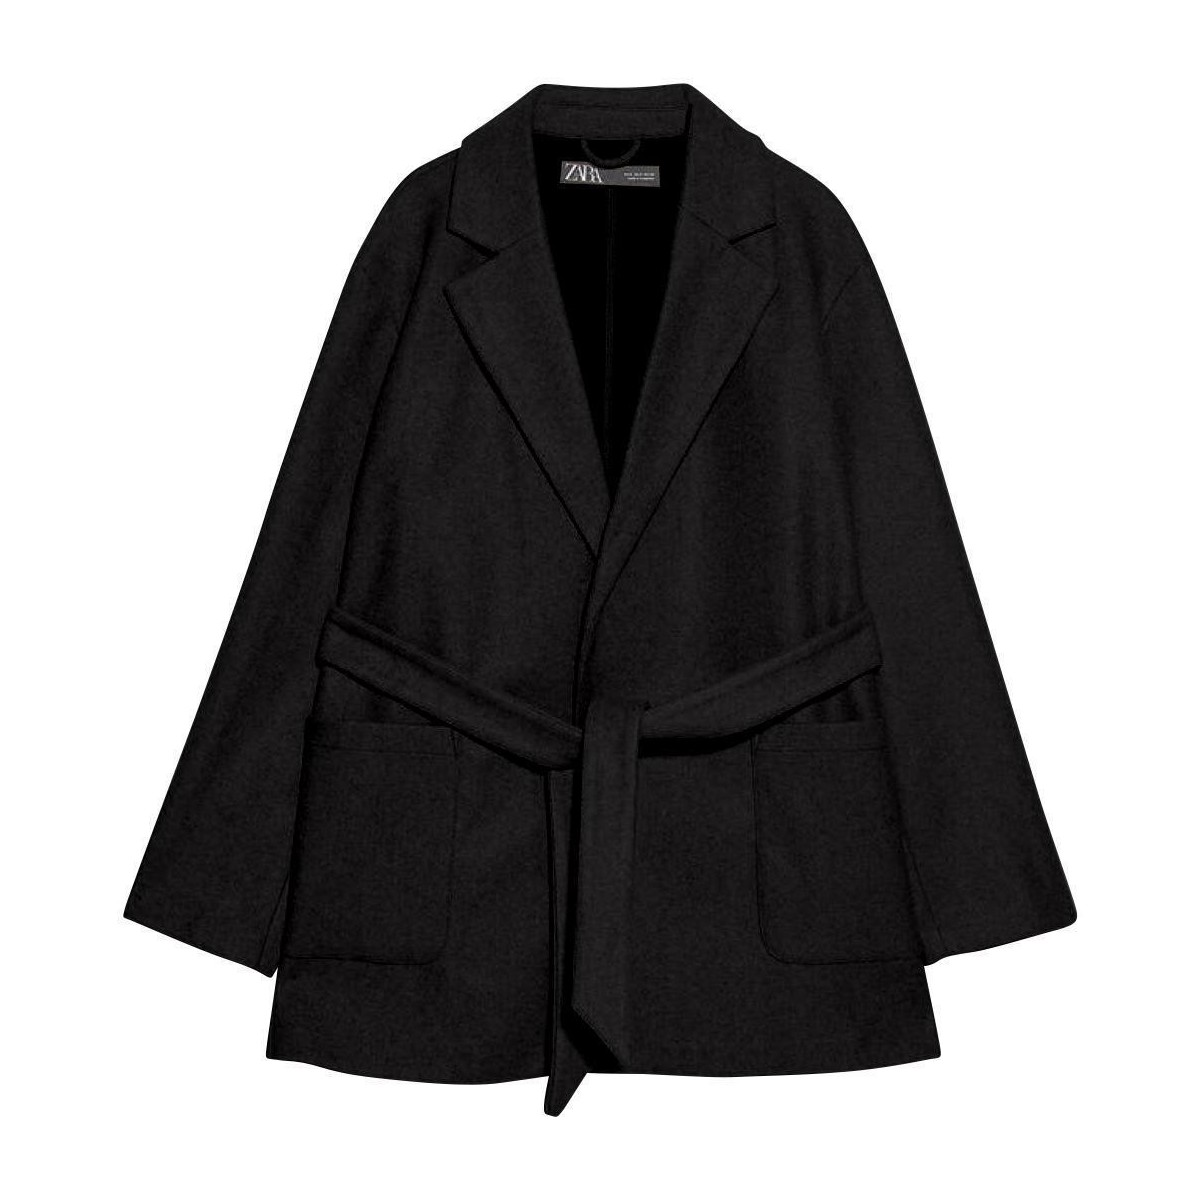 Clothing Women Parkas Anastasia Fashions Black Wrap Jacket Black